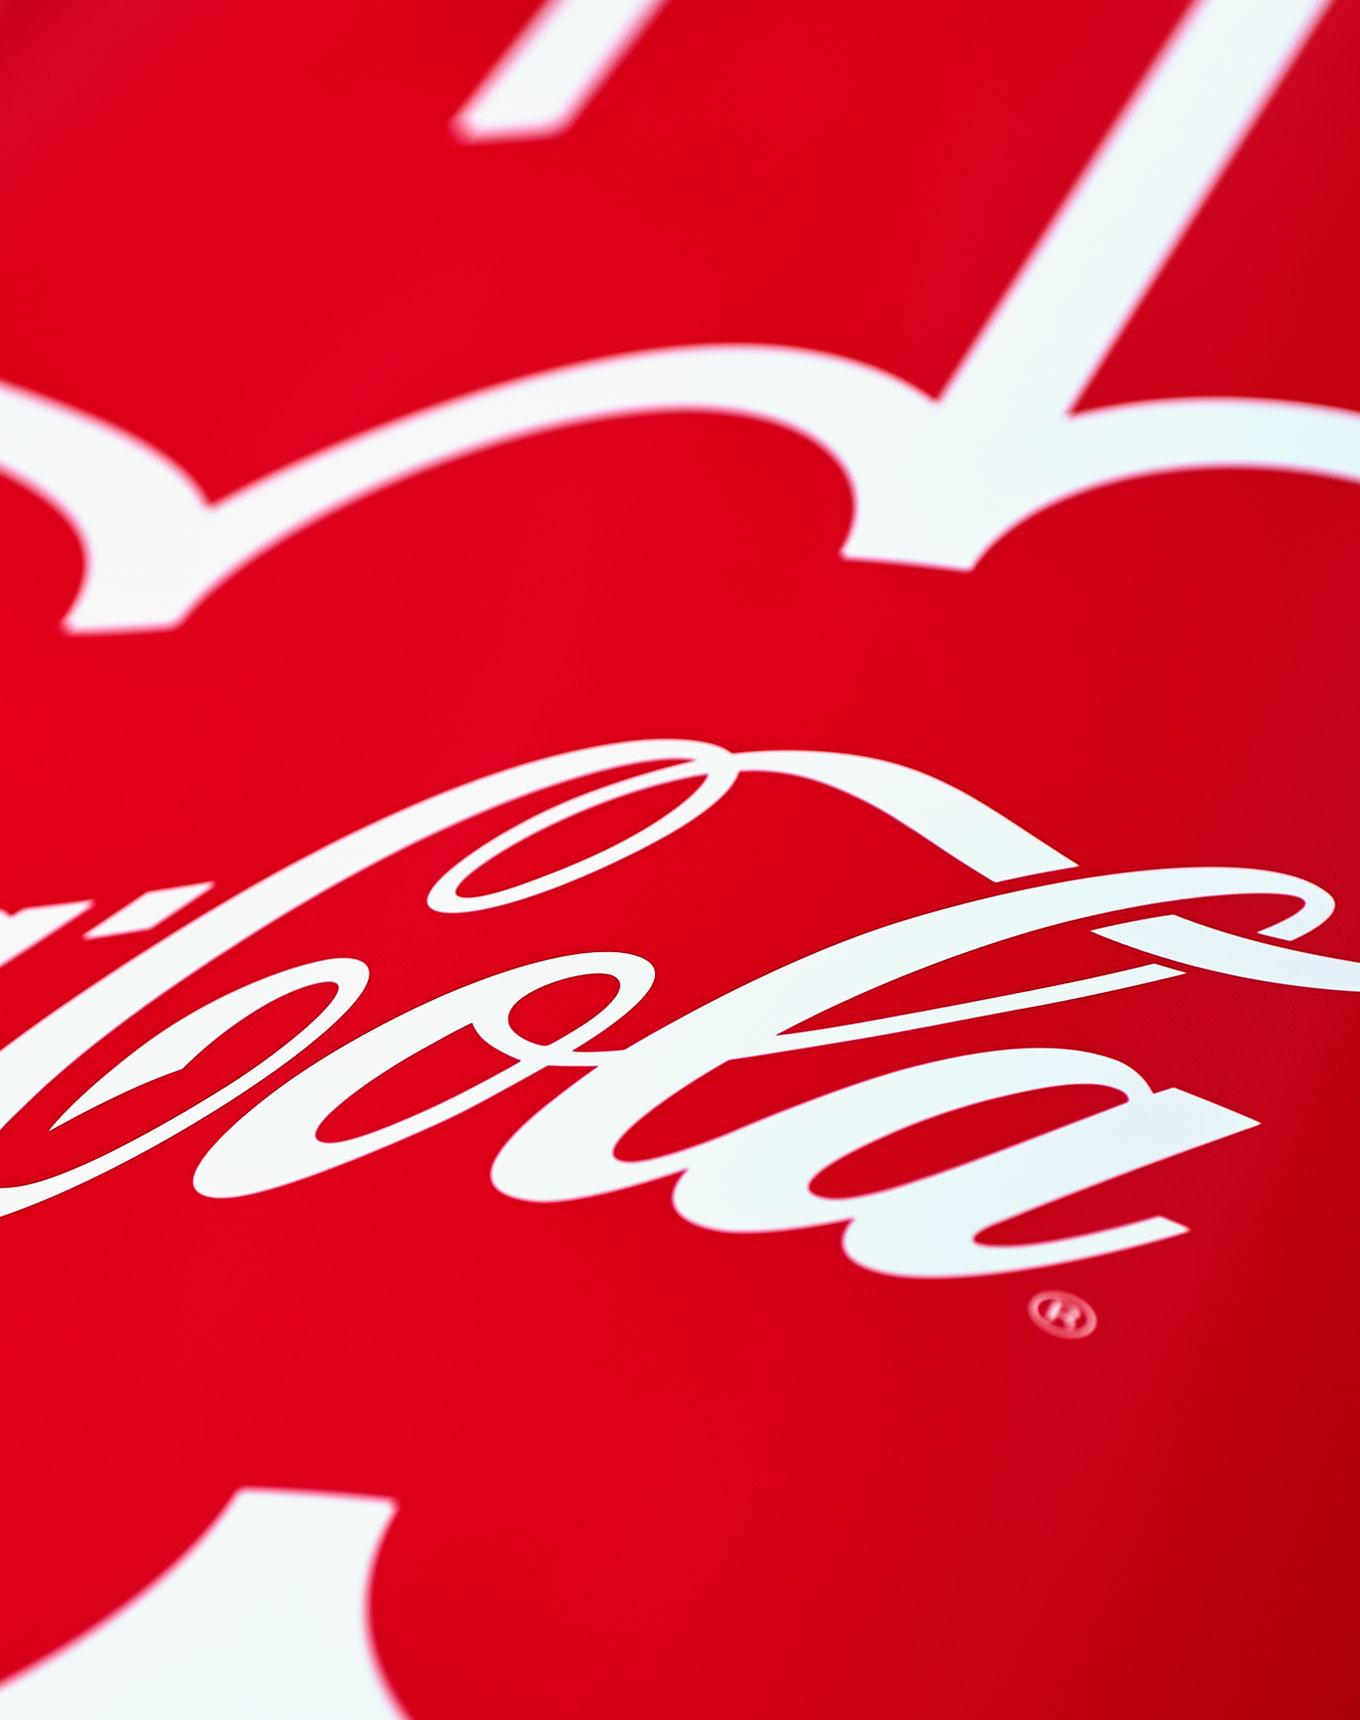 Coca-Cola Design